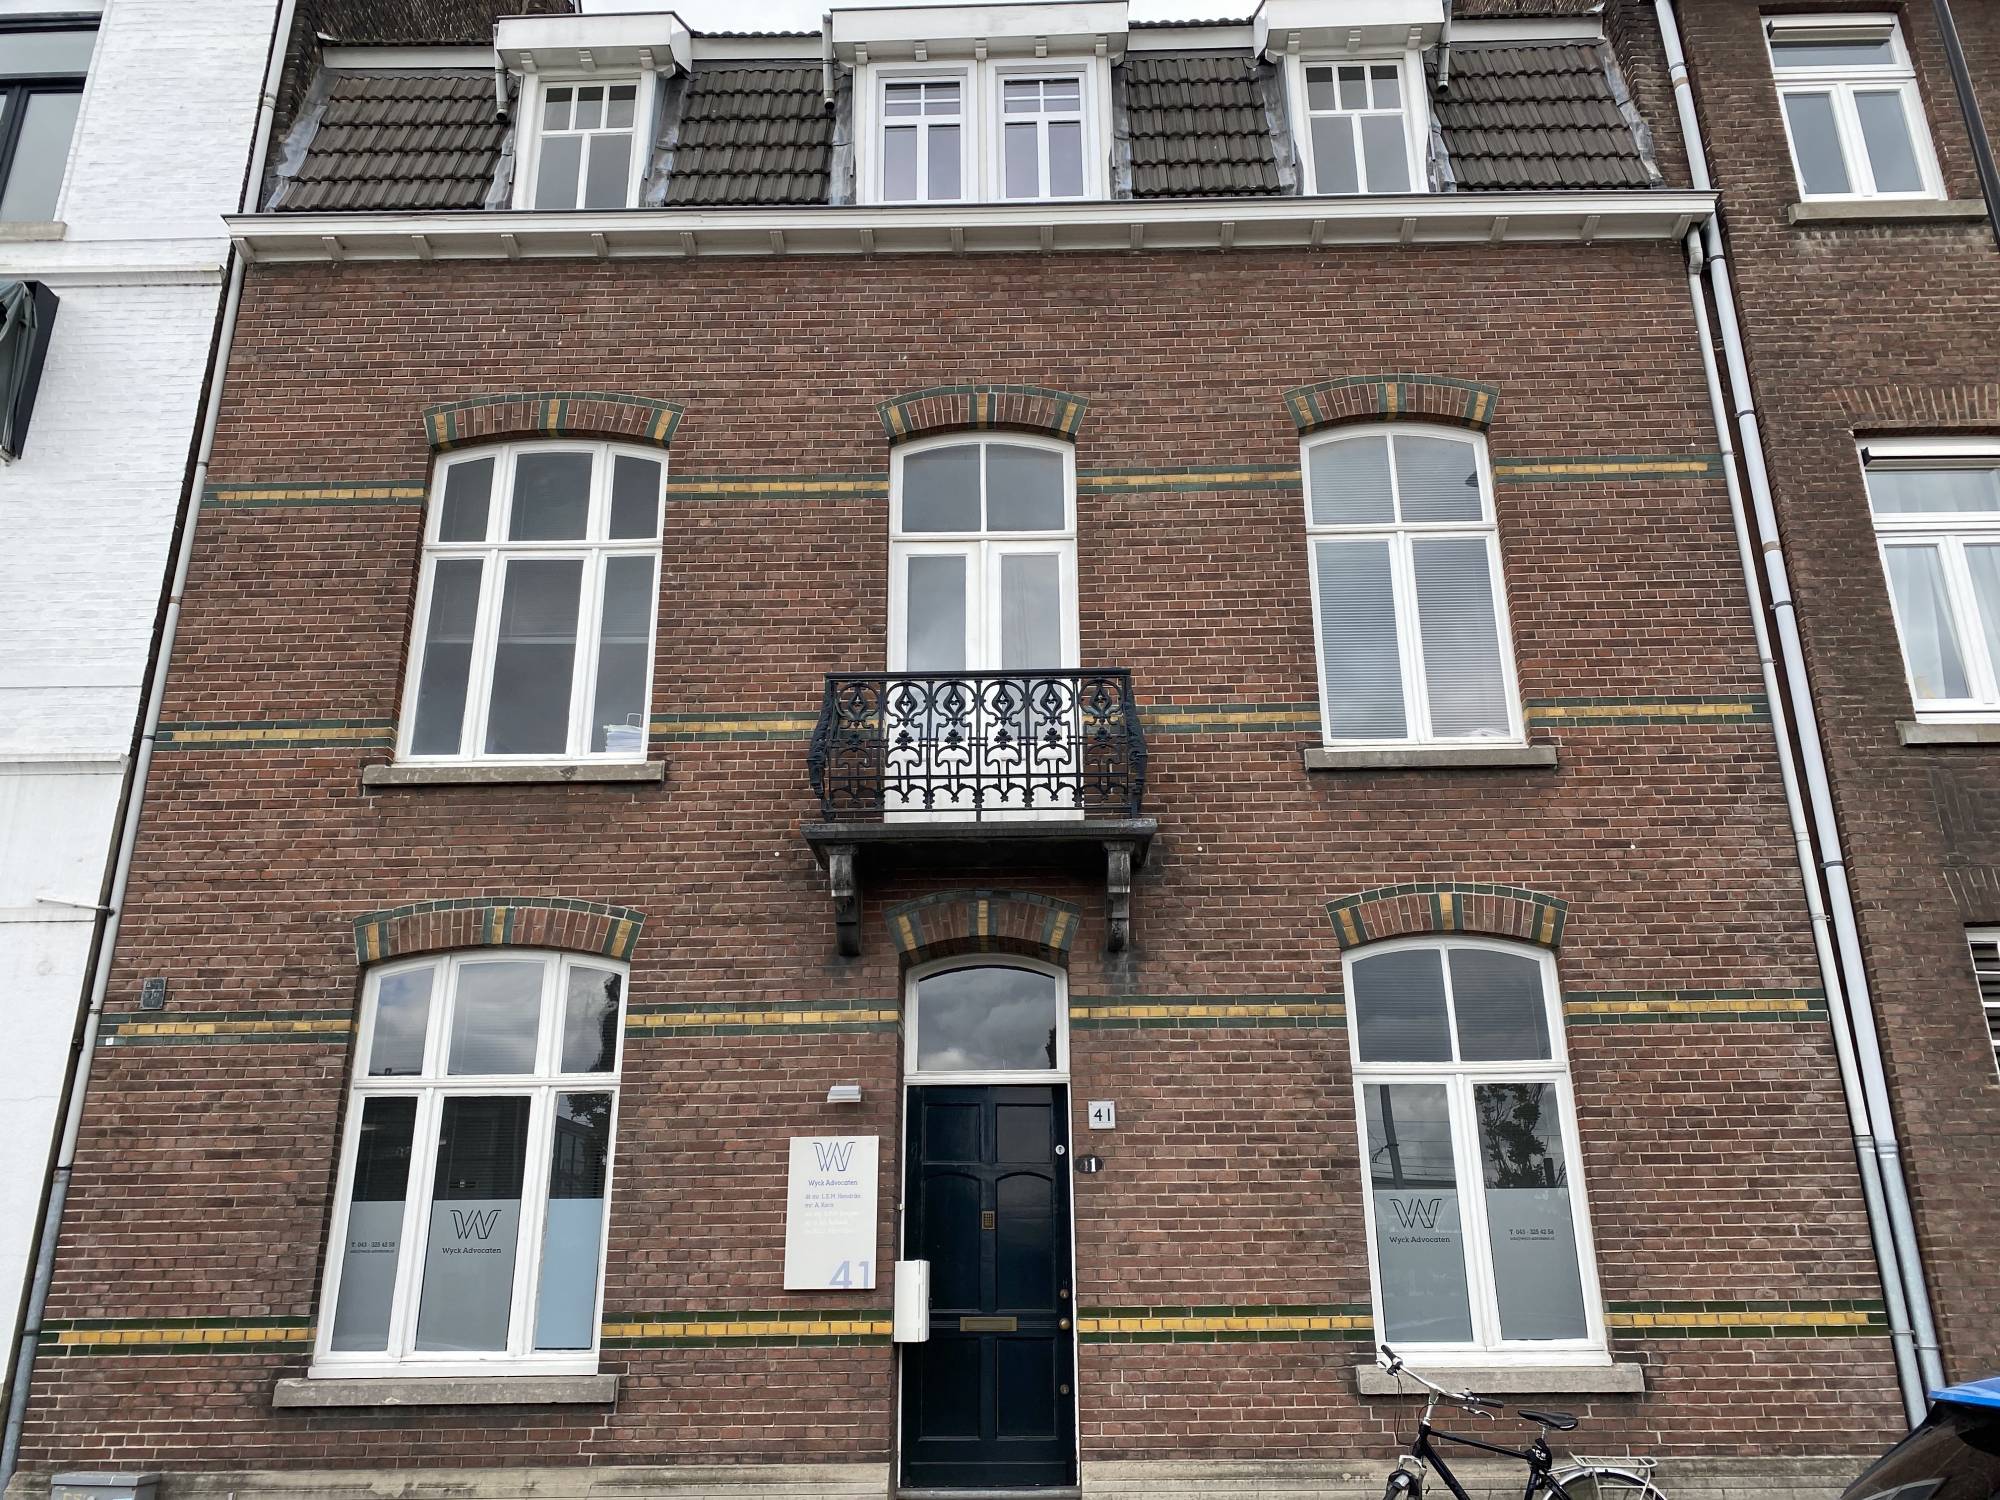 Bekijk foto 1/20 van apartment in Maastricht